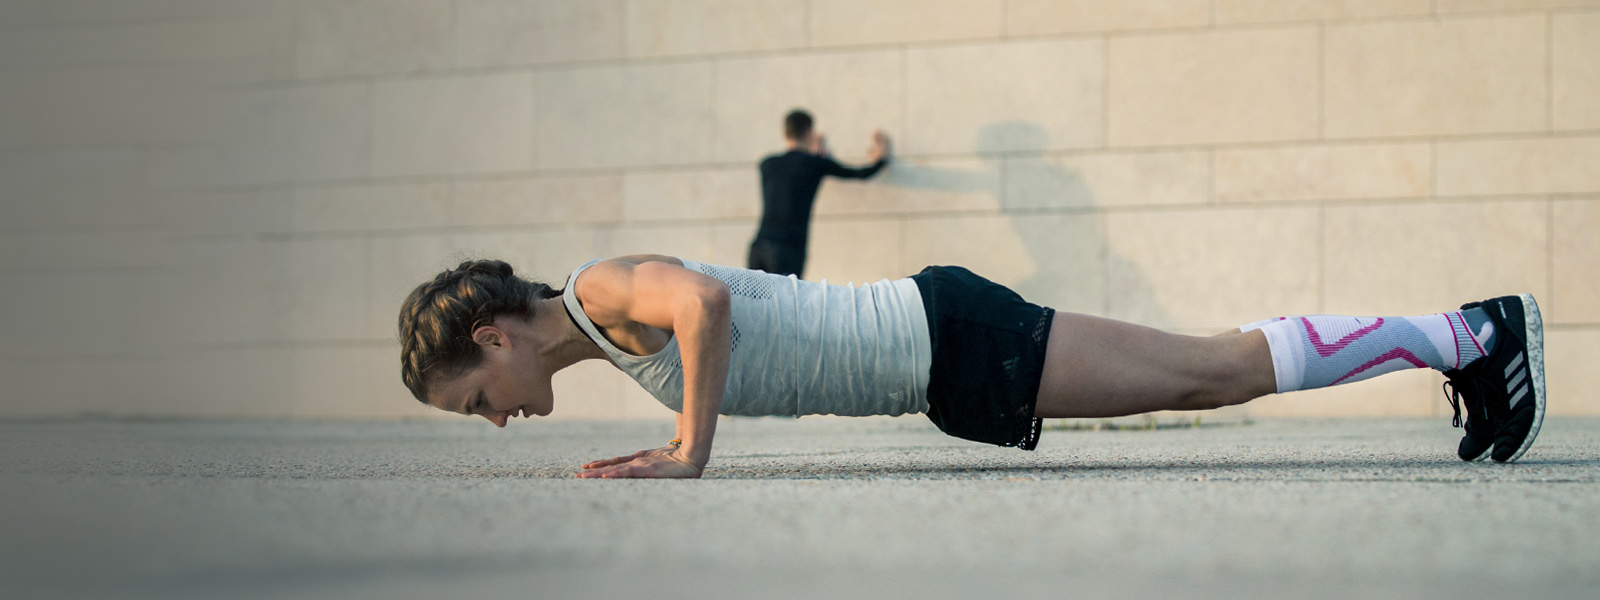 Vrouw maakt push-ups op een betonnen vloer op de achtergrond die een man uitstrekt op een muur